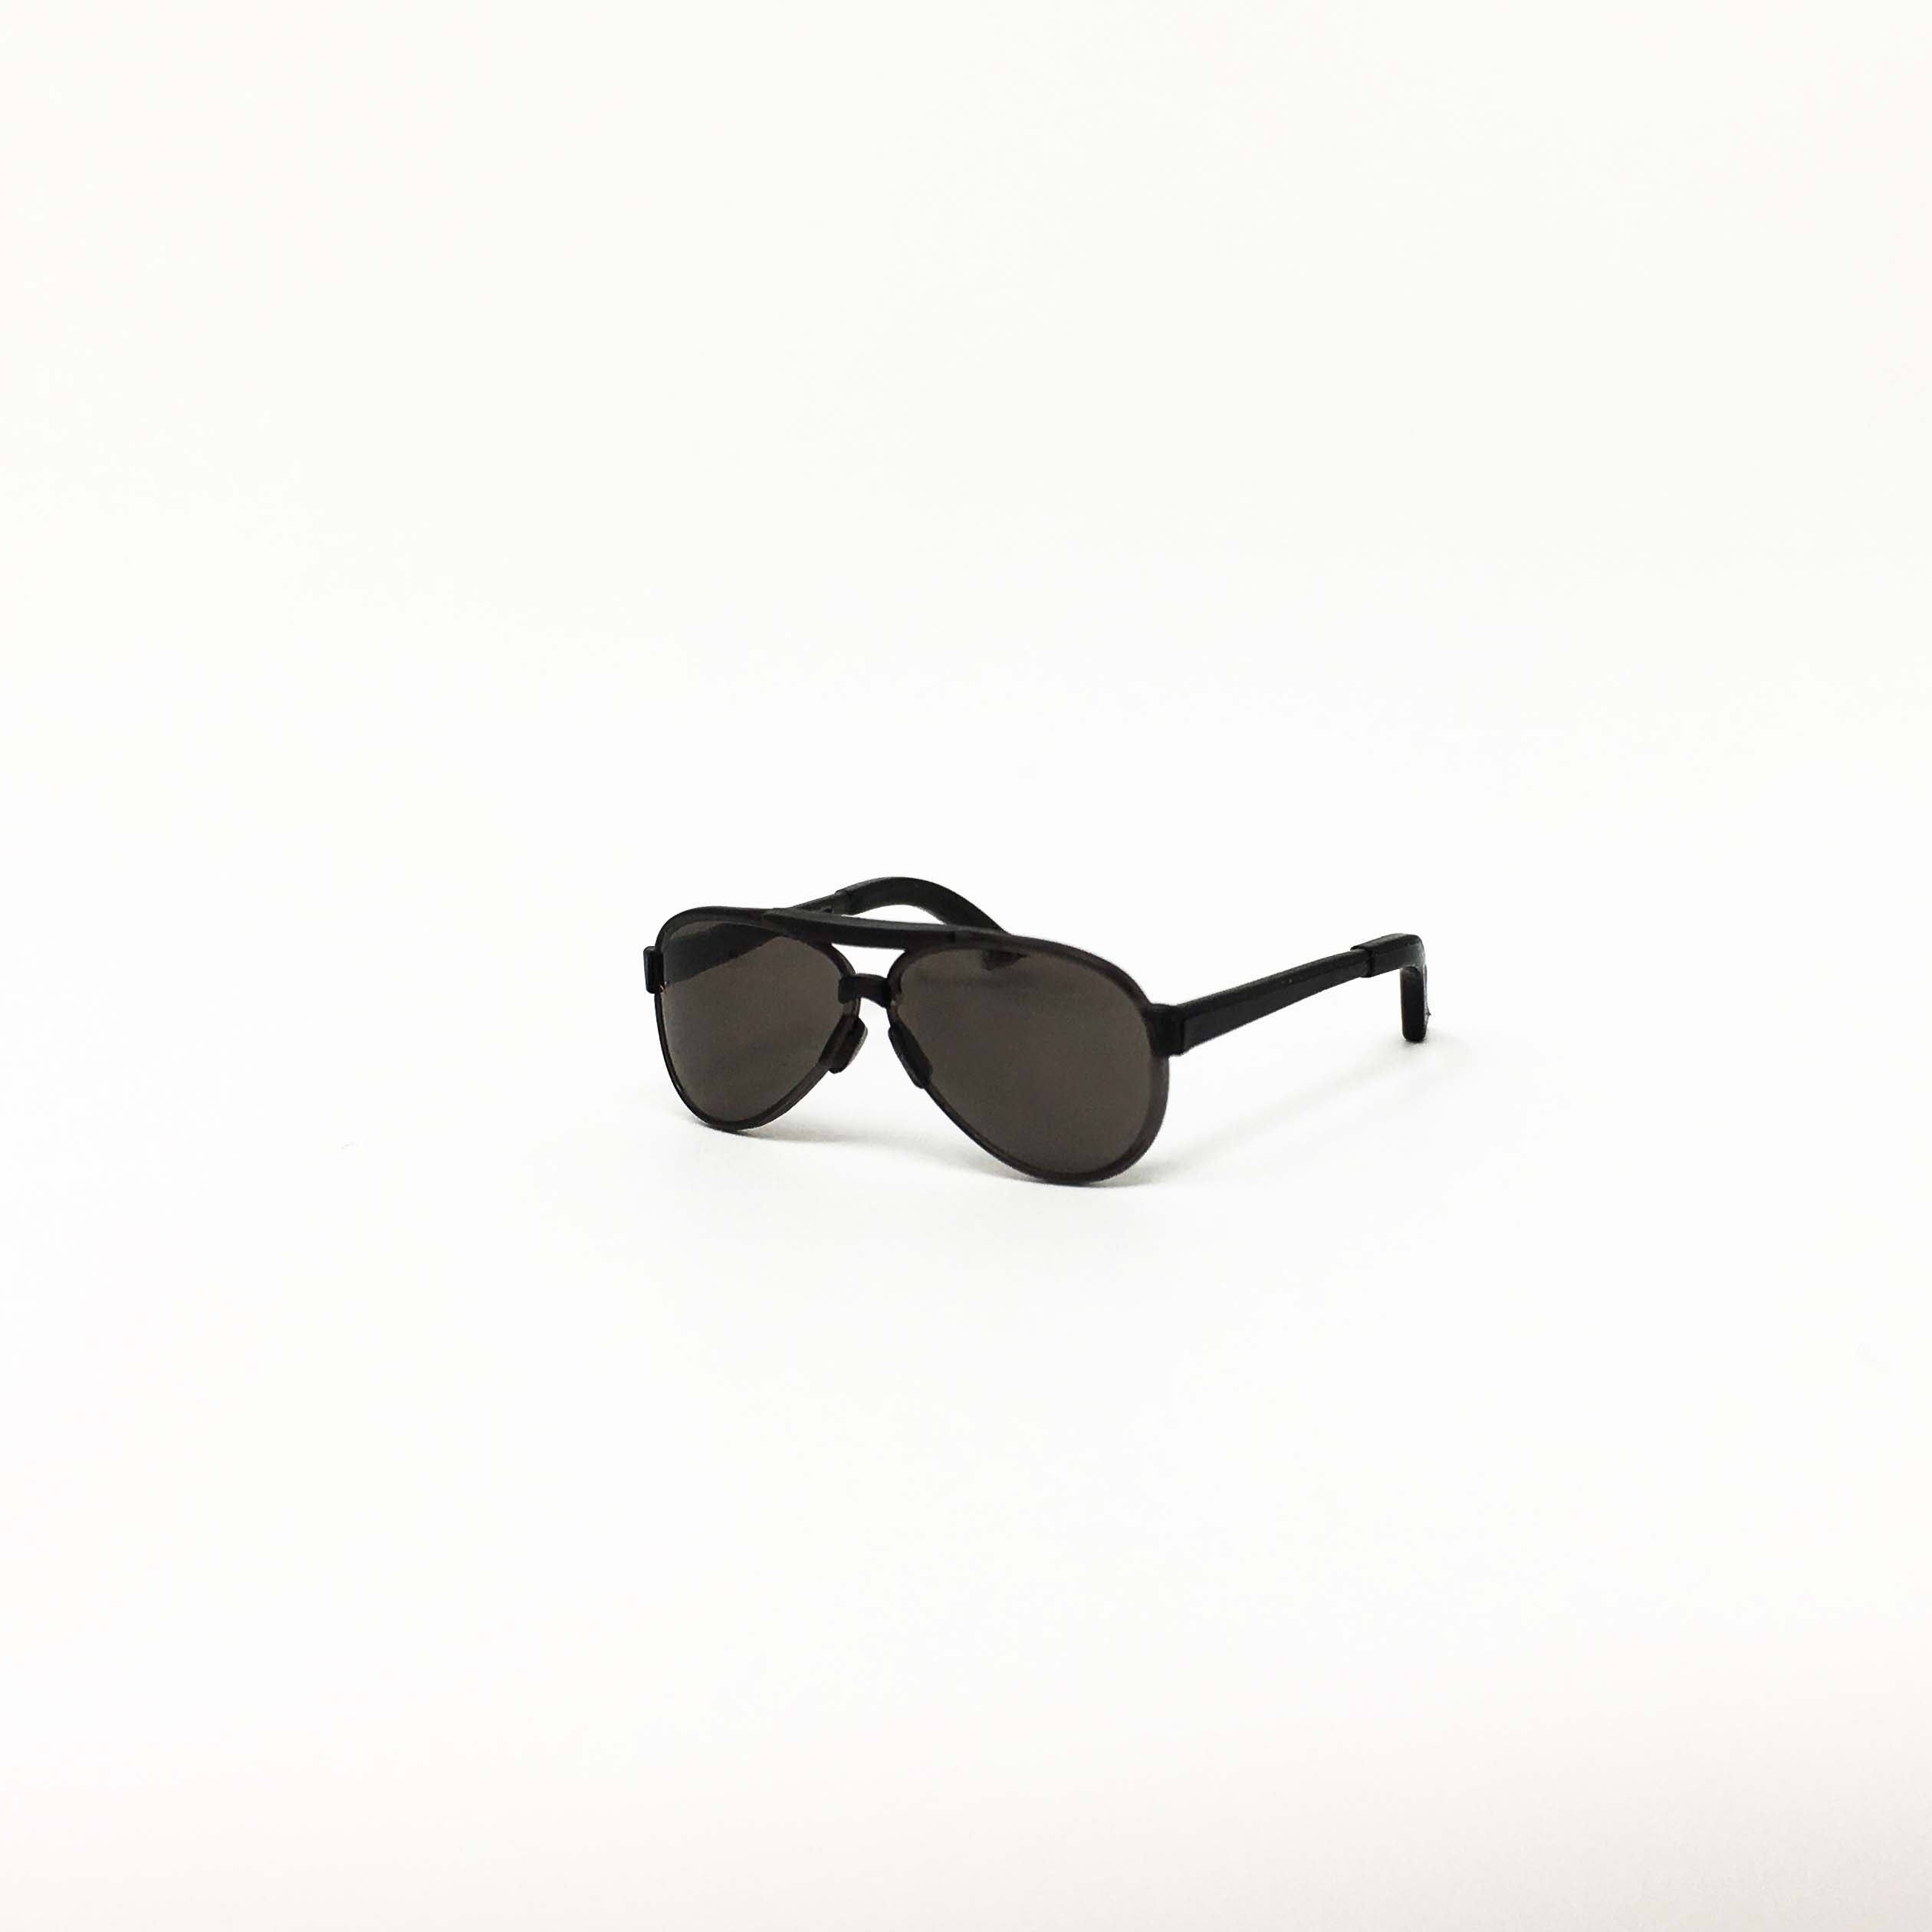 Teardrop Black Aviator Sunglasses - 1:6 Scale